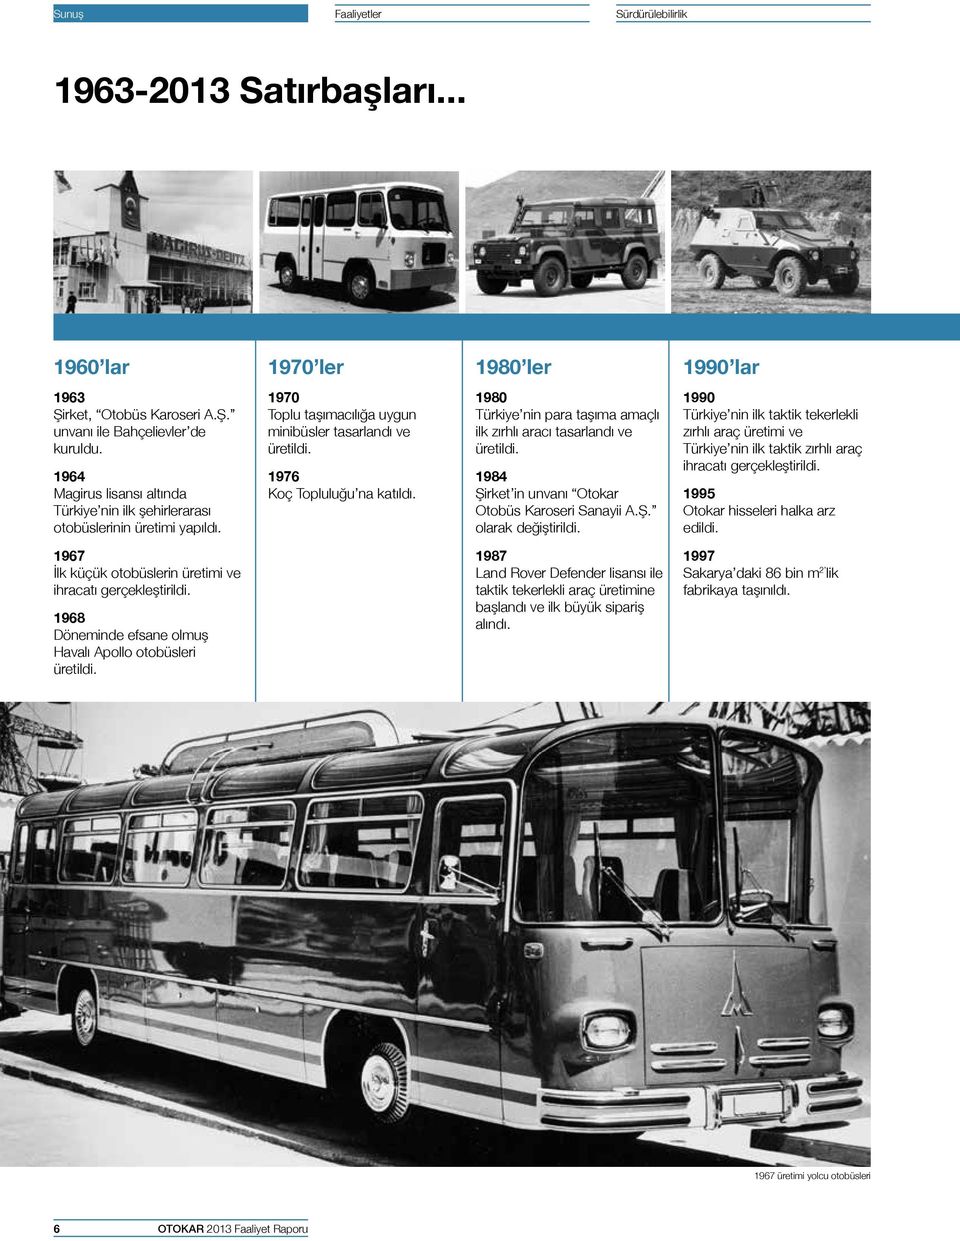 1980 Türkiye nin para taşıma amaçlı ilk zırhlı aracı tasarlandı ve üretildi. 1984 Şirket in unvanı Otokar Otobüs Karoseri Sanayii A.Ş. olarak değiştirildi.